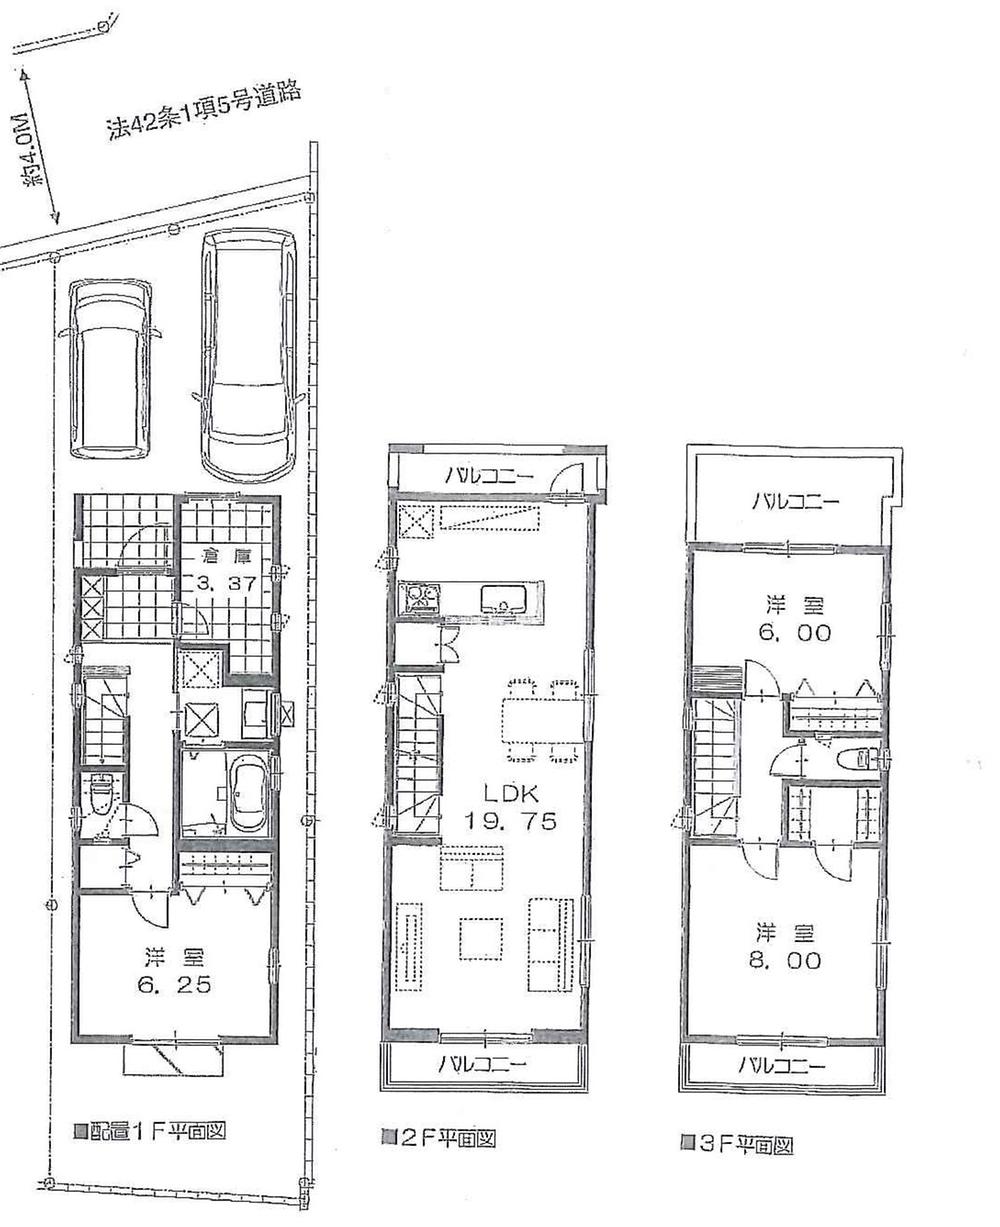 Floor plan. (A Building), Price 49,800,000 yen, 3LDK+S, Land area 83.98 sq m , Building area 107 sq m